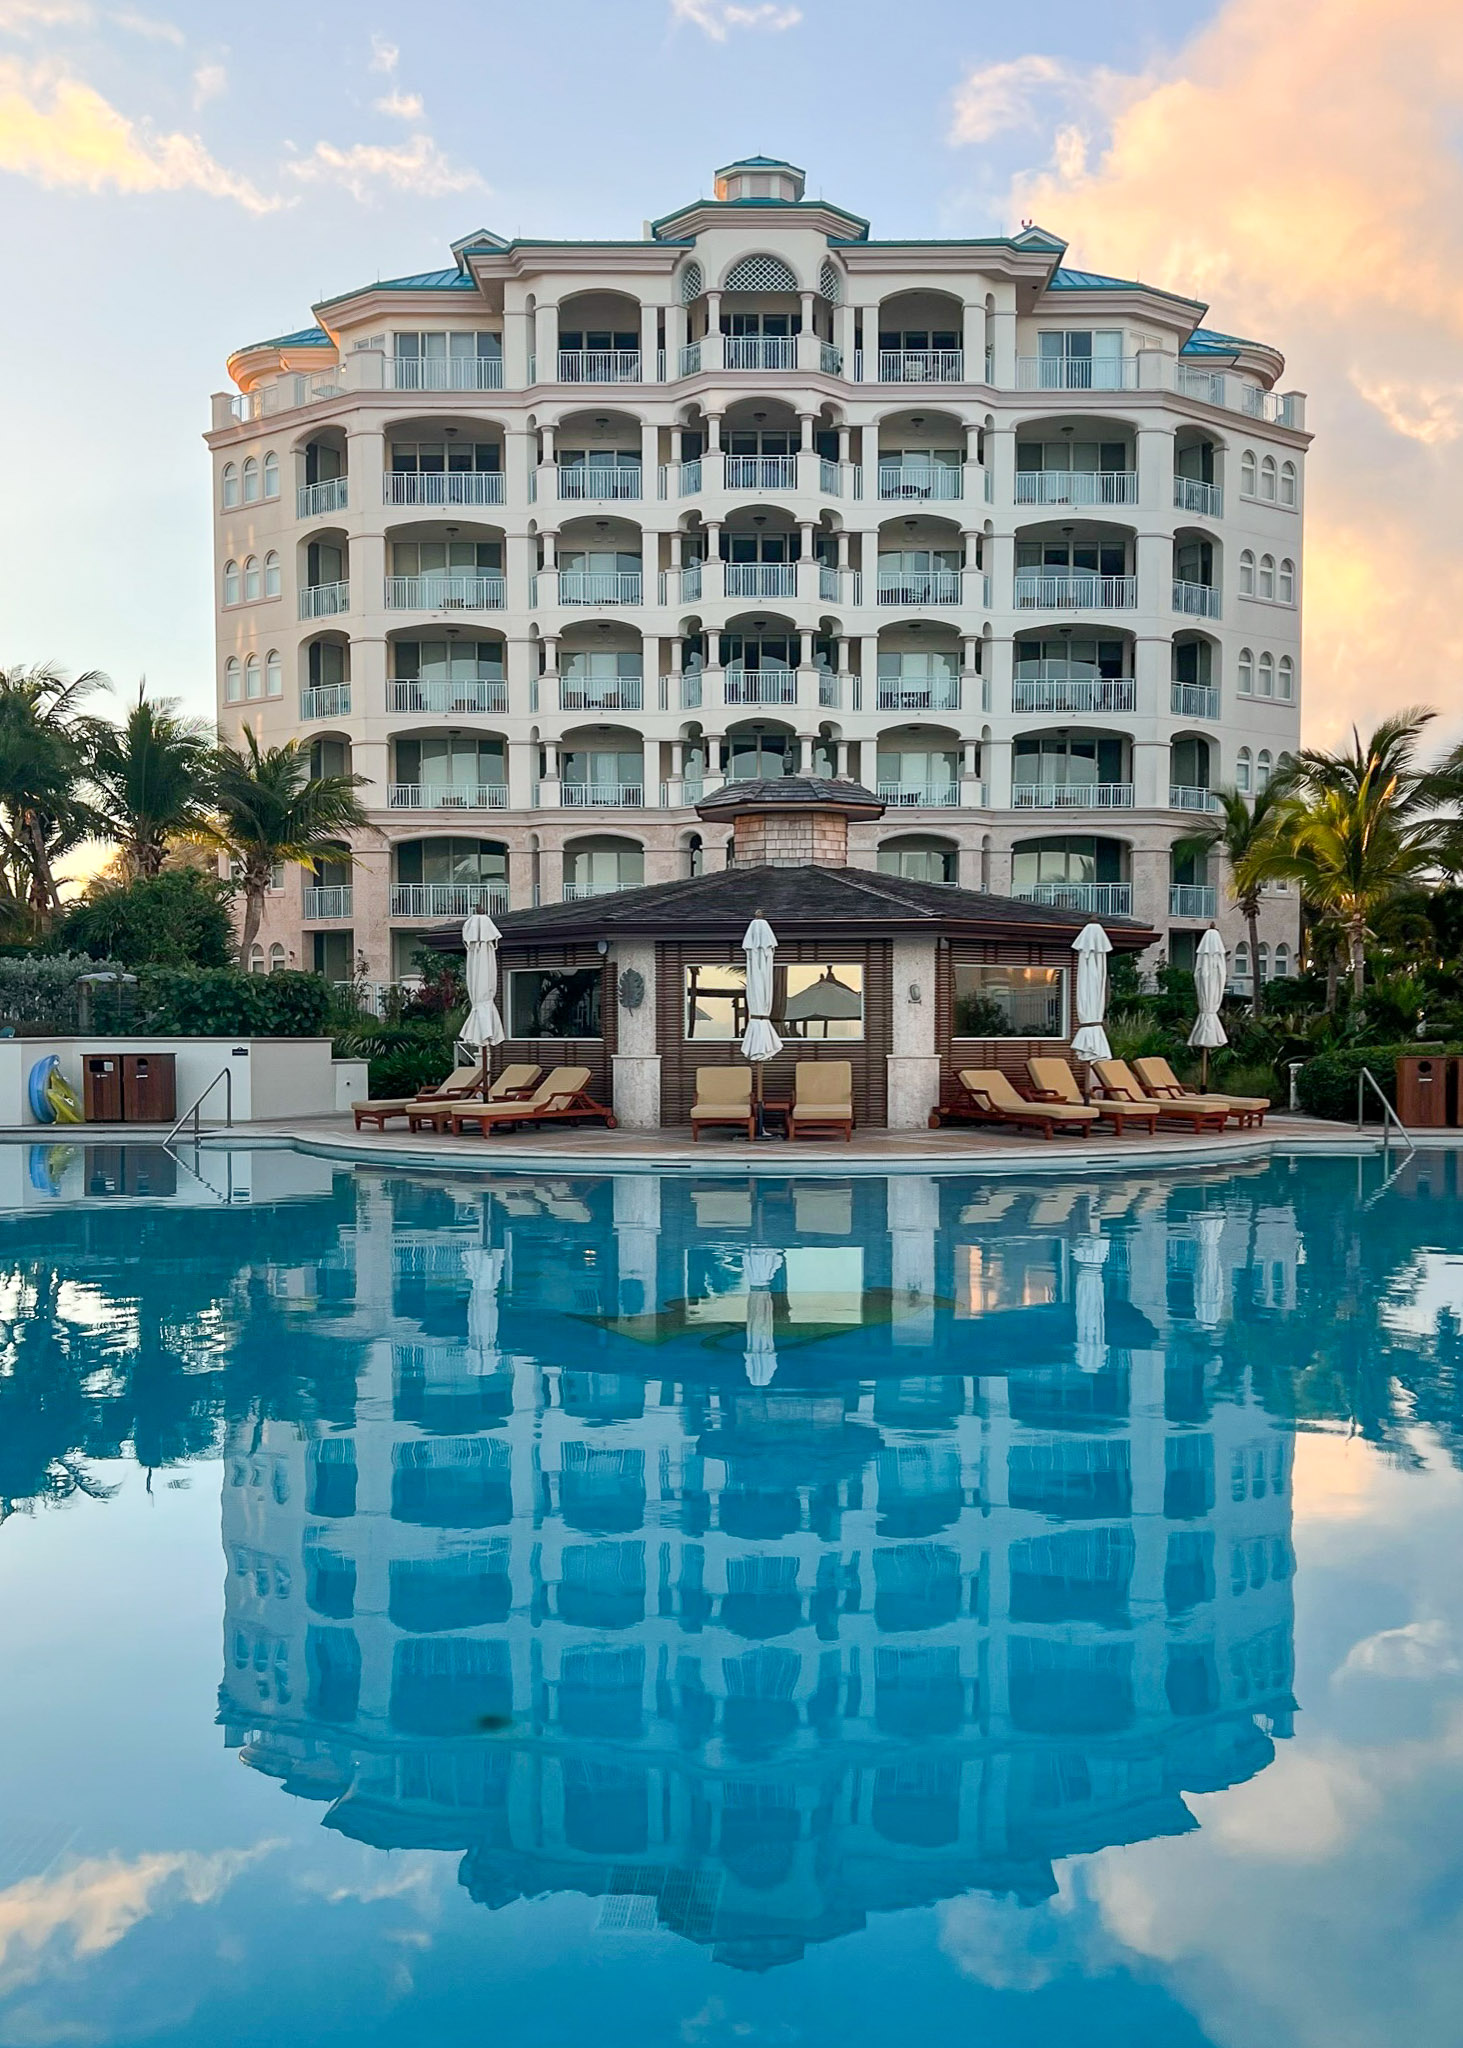 seven stars resort family pool - luxury spring break destinations for families